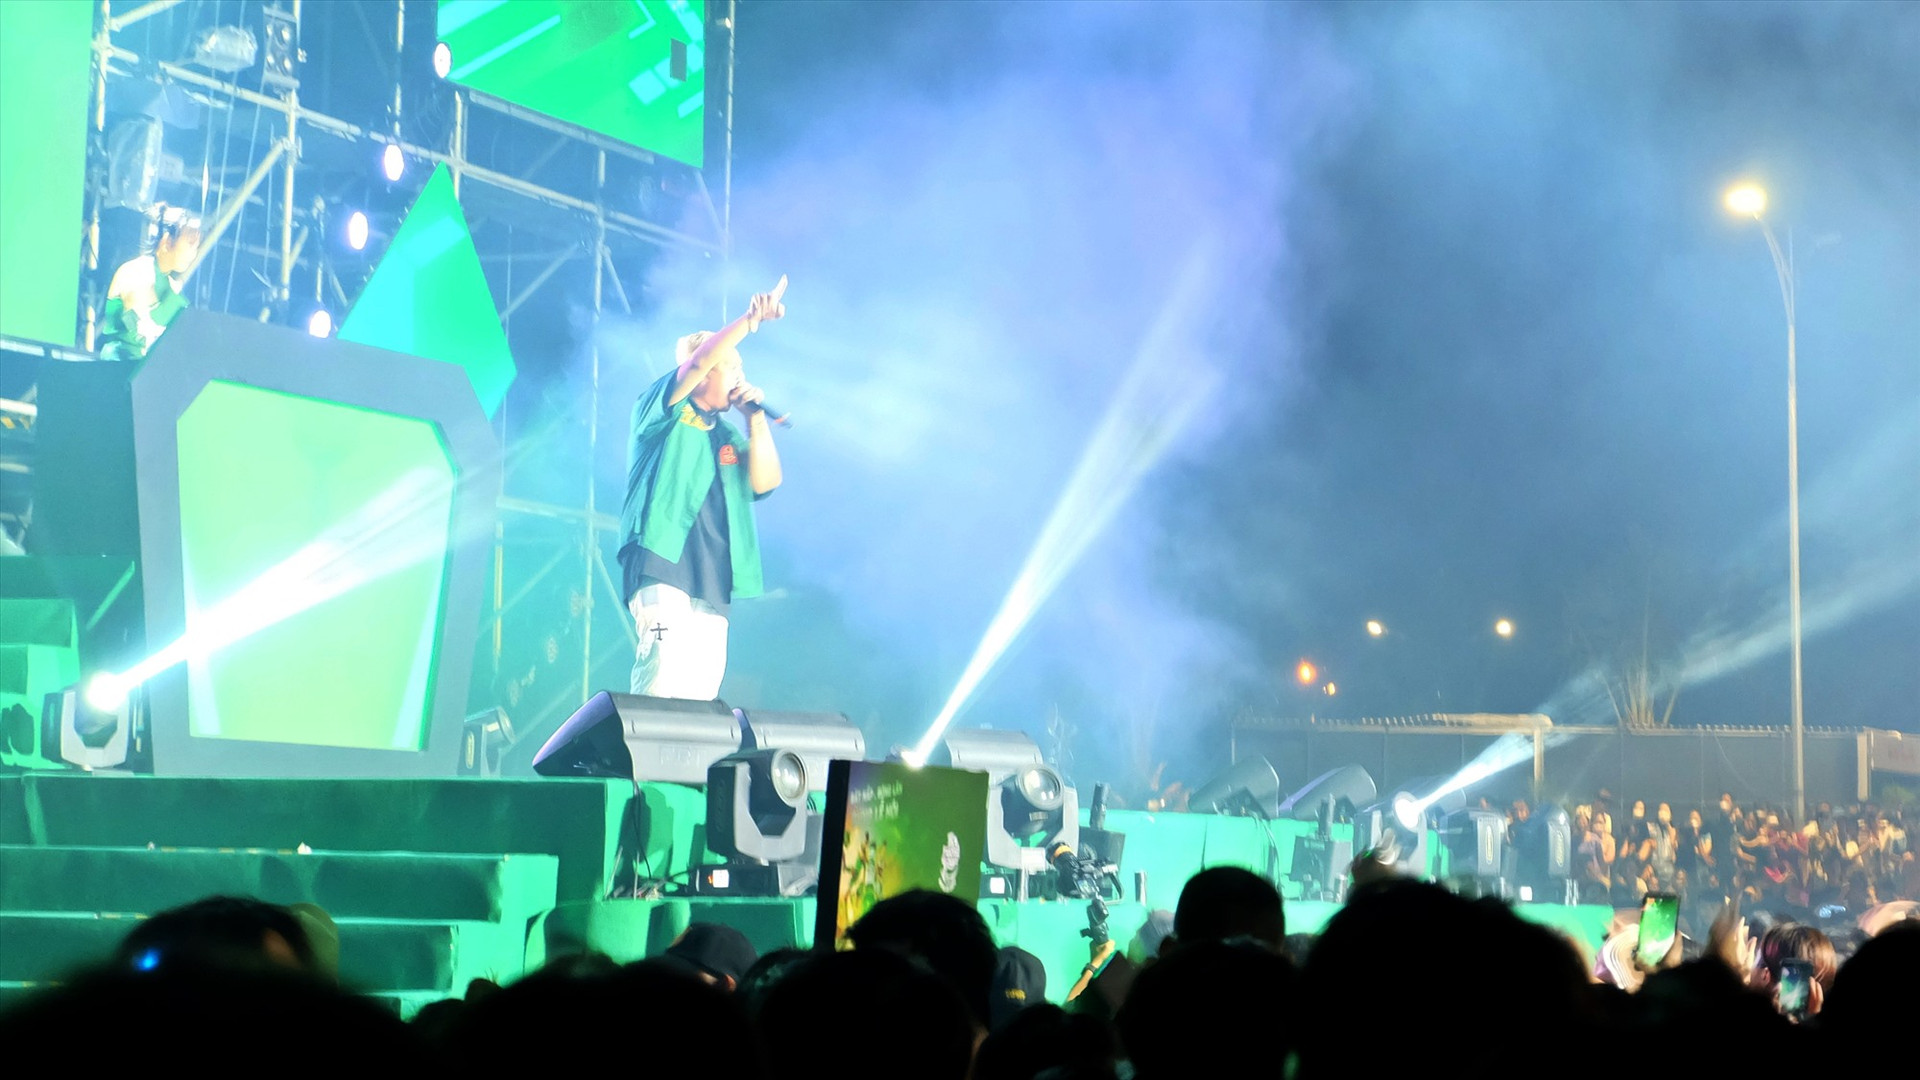 Đêm nhạc hội đầy sôi động với sự tham gia của nhiều ngôi sao giải trí như Isaac, Khắc Việt, S.T Sơn Thạch, Hoàng Rapper, DJ Trang Moon… Ảnh: Đ.L